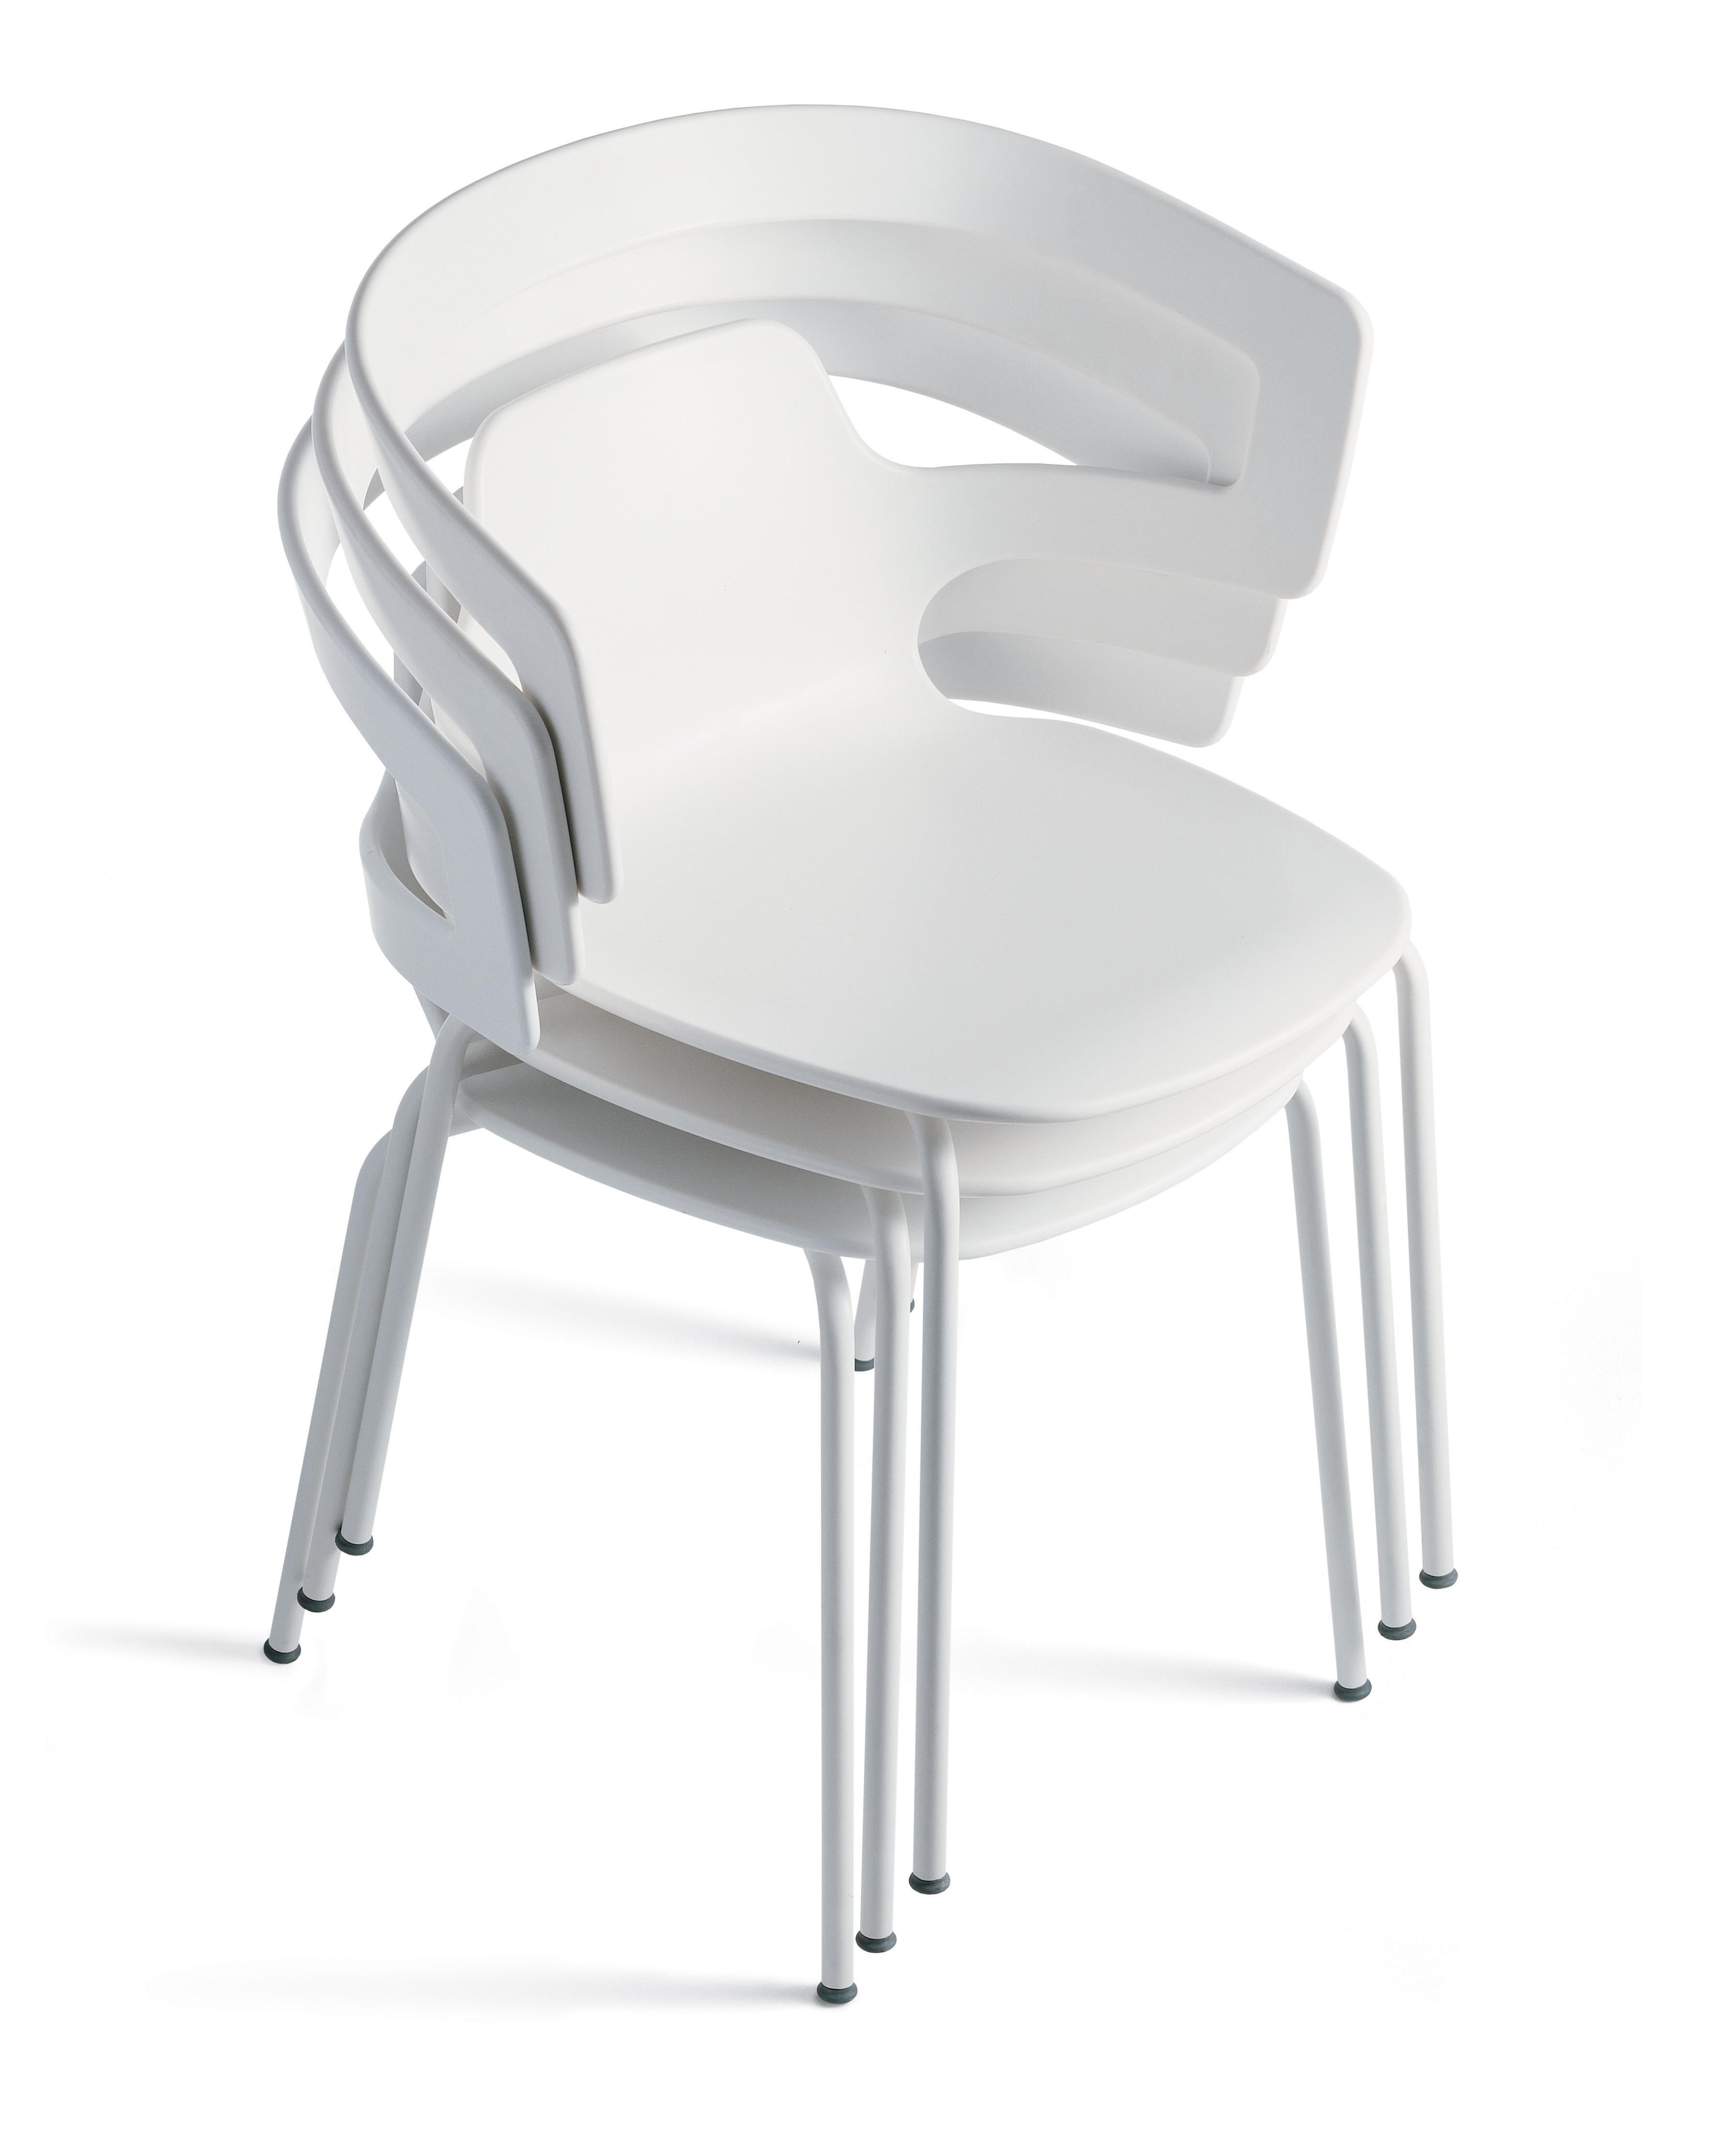 Alias 500 Segesta Stuhl mit weiß lackiertem Stahlgestell von Alfredo Häberli

Stapelbarer Stuhl mit Armlehnen mit Struktur aus lackiertem oder verchromtem Stahl; Sitz und Rückenlehne aus massivem Kunststoff.

Er wurde 1964 in Buenos Aires